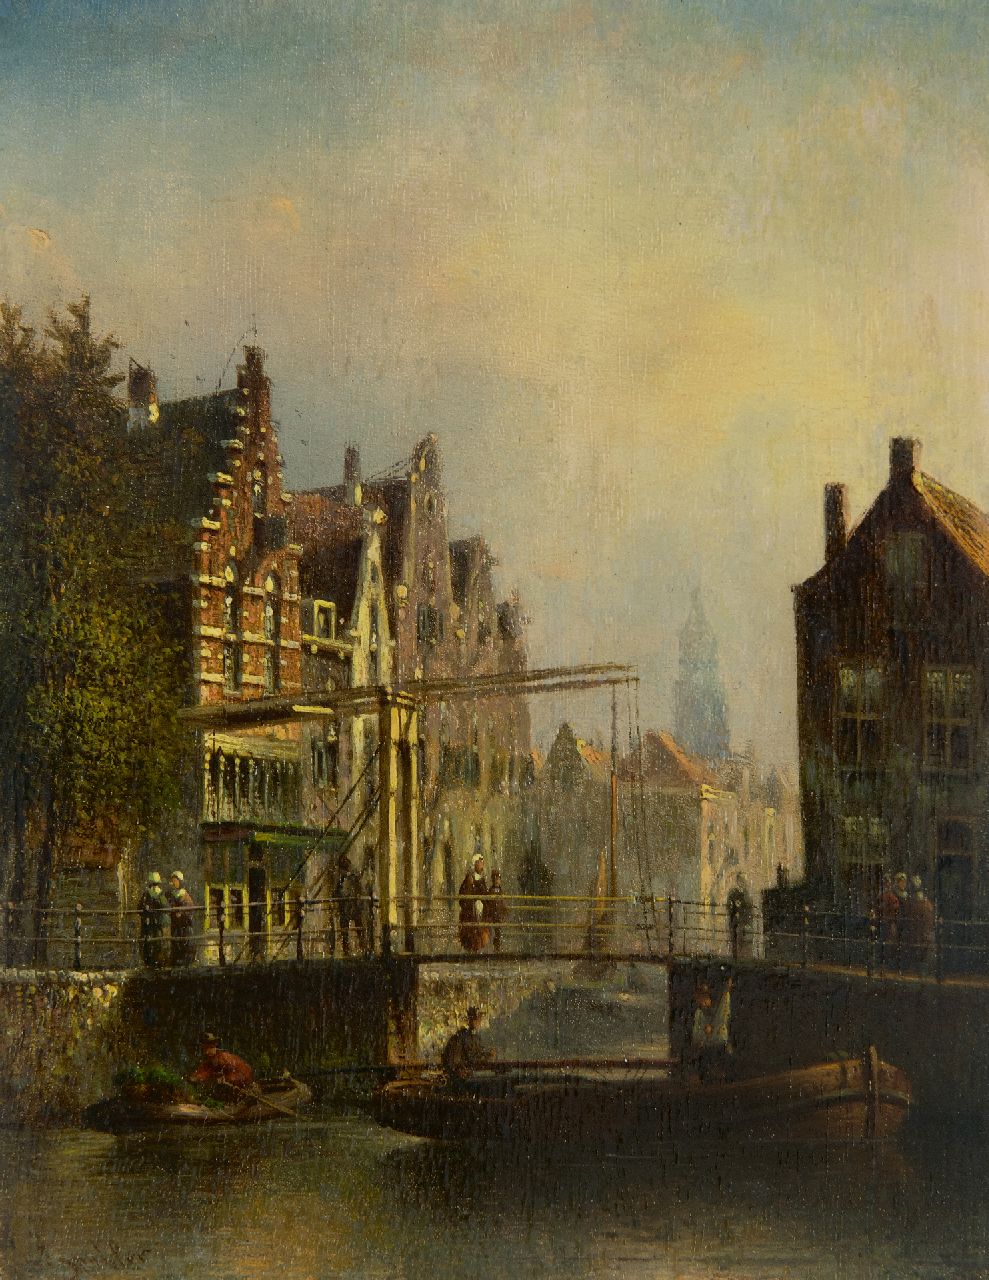 Spohler J.F.  | Johannes Franciscus Spohler | Schilderijen te koop aangeboden | Hollands stadsgezicht met ophaalbrug, olieverf op paneel 20,4 x 16,0 cm, gesigneerd linksonder (vaag)